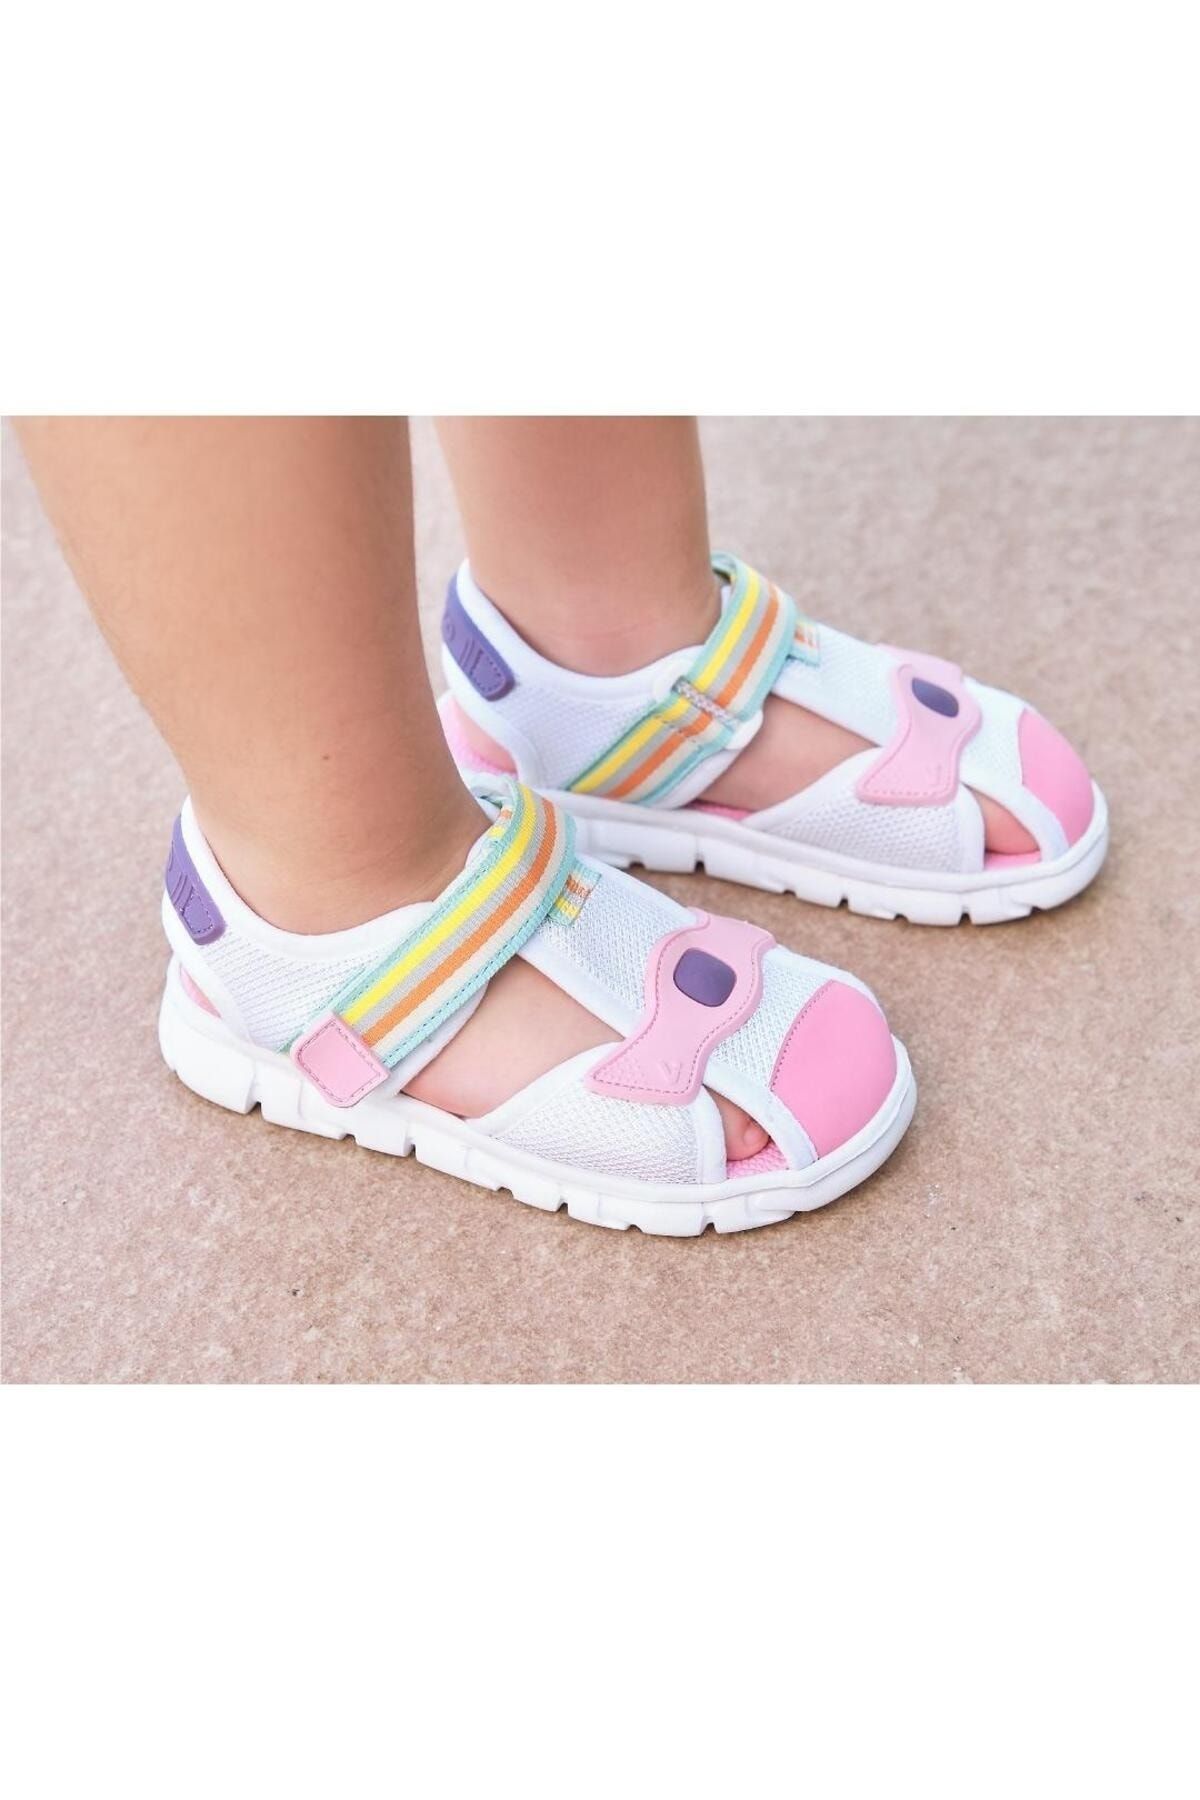 Vicco Flow Hafif Kız Çocuk Beyaz/Pembe Sandalet